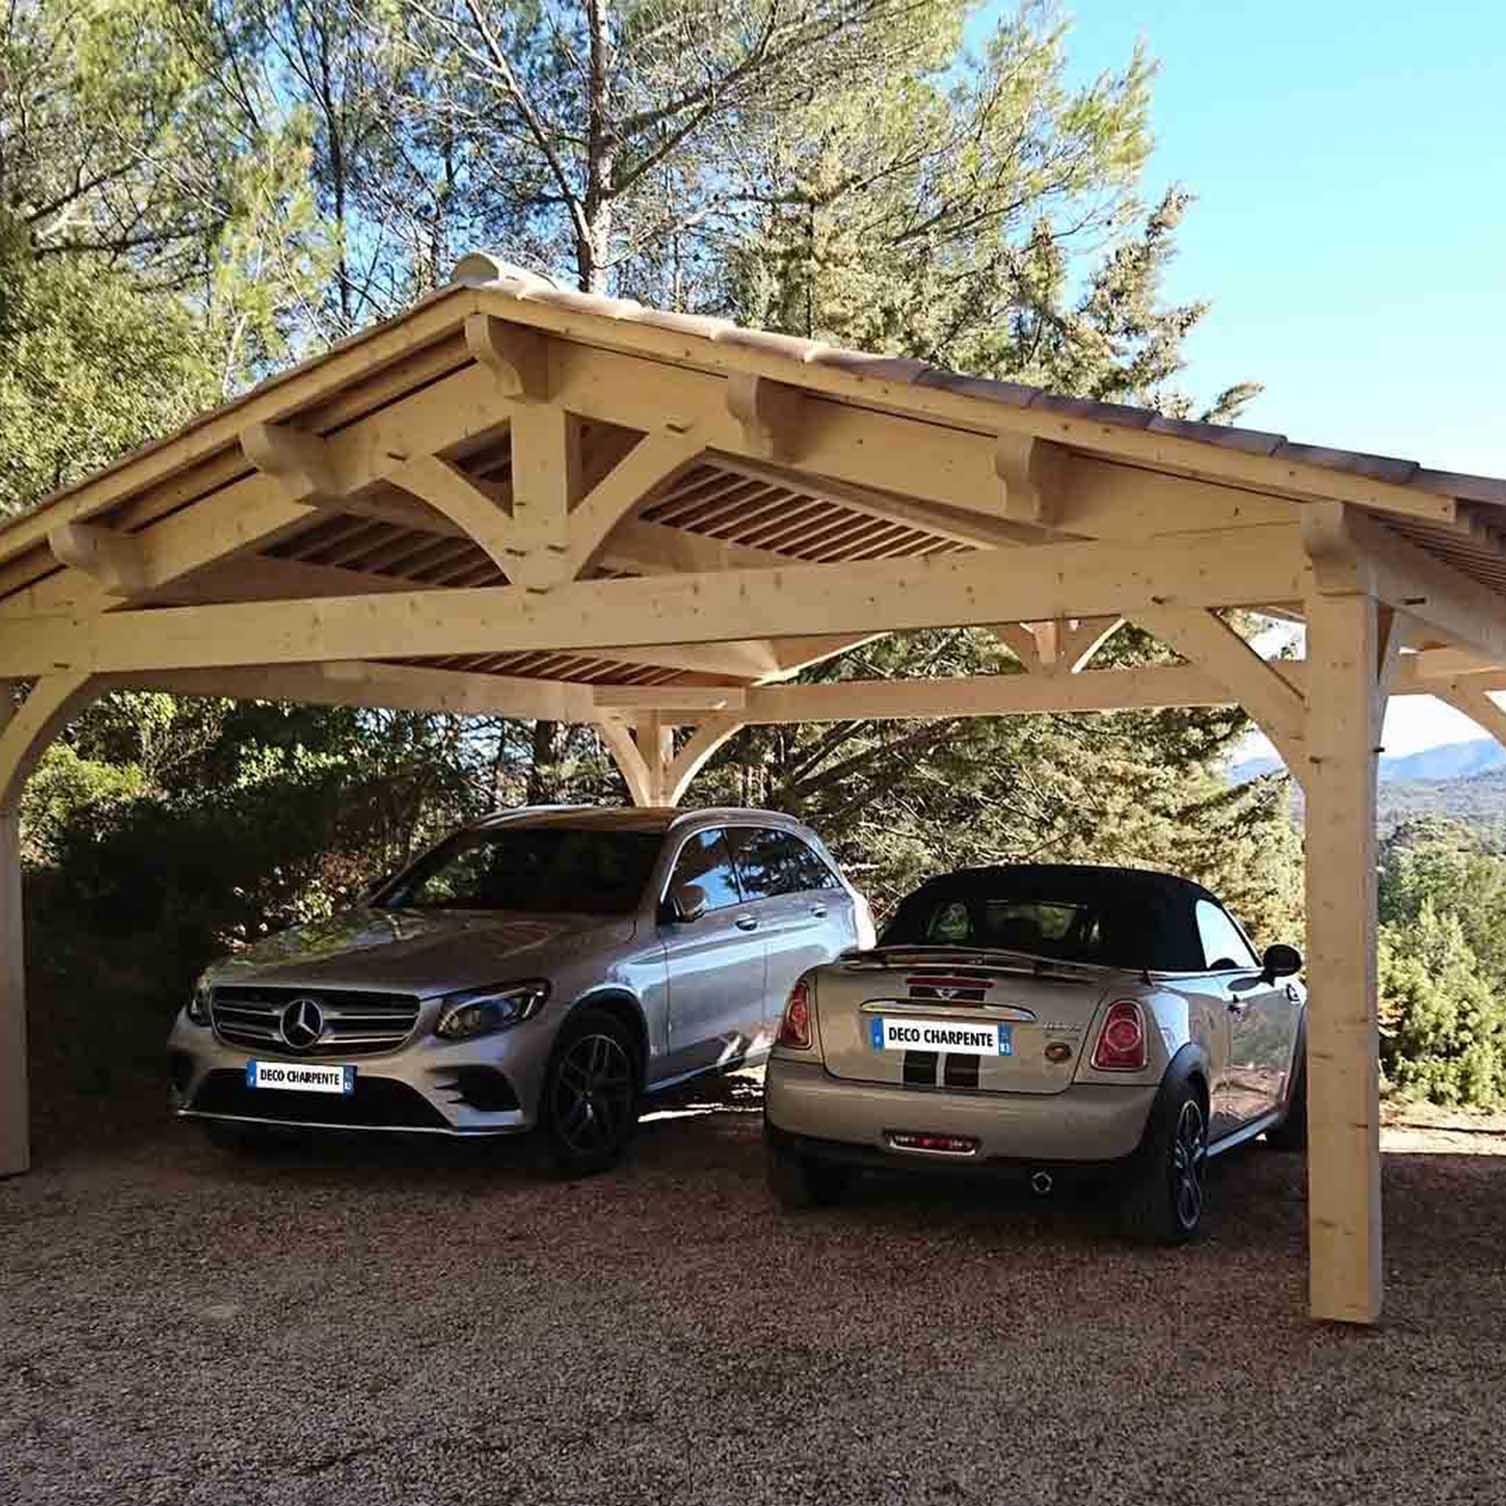 Découvrez les styles d'abris voiture en bois sur mesure, garantis 10 ans.